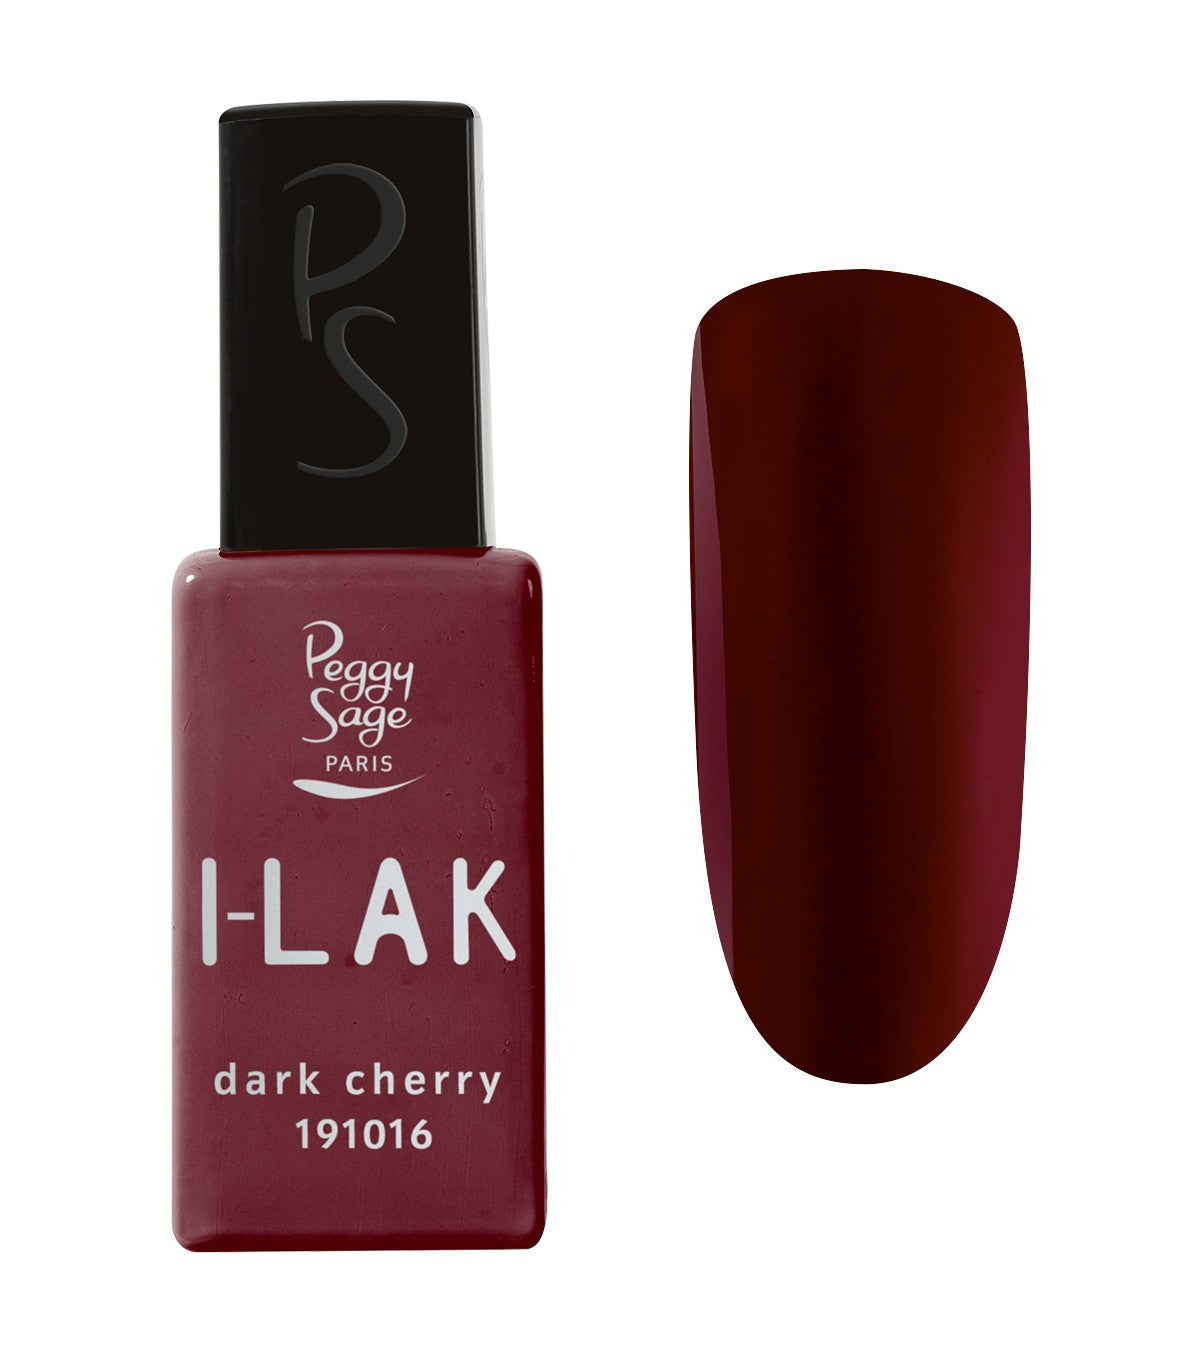 I-LAK Dark Cherry Ref 191016